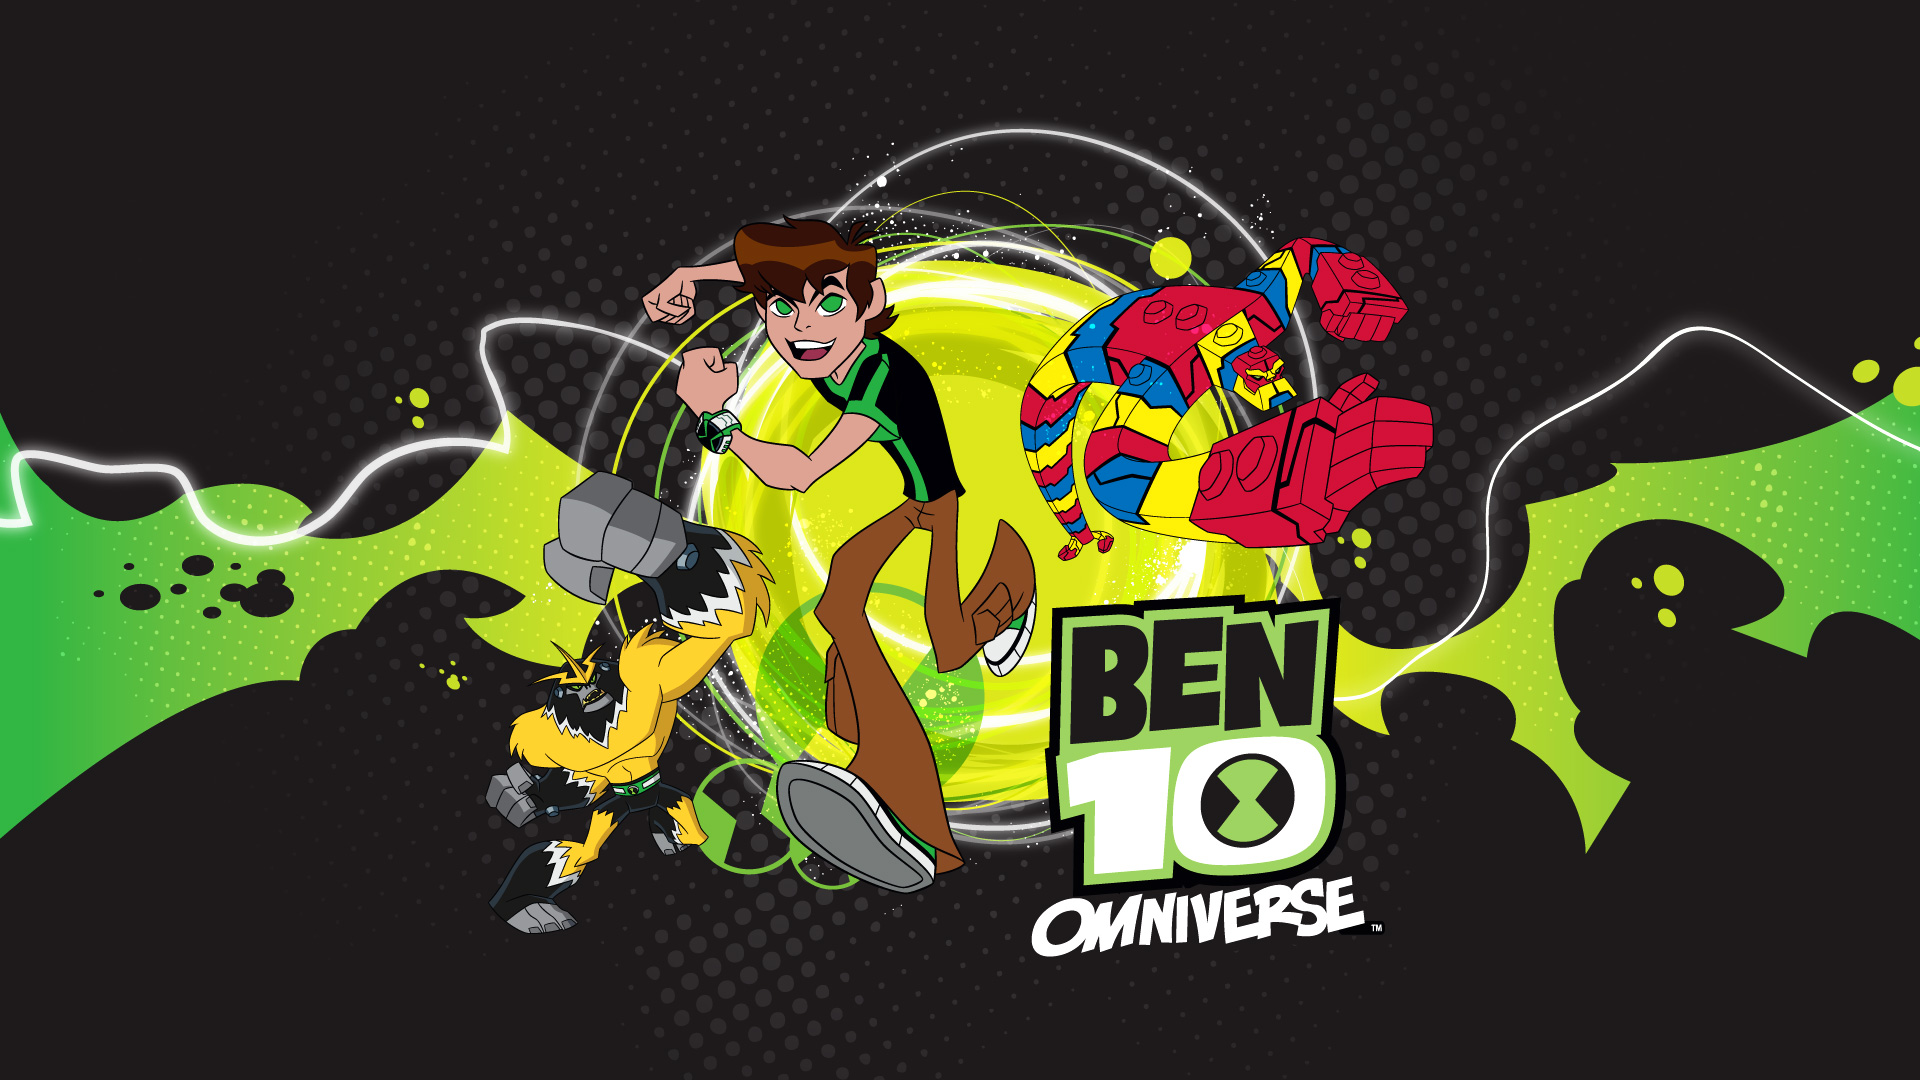 Descargar fondos de escritorio de Ben 10 Omniverse HD